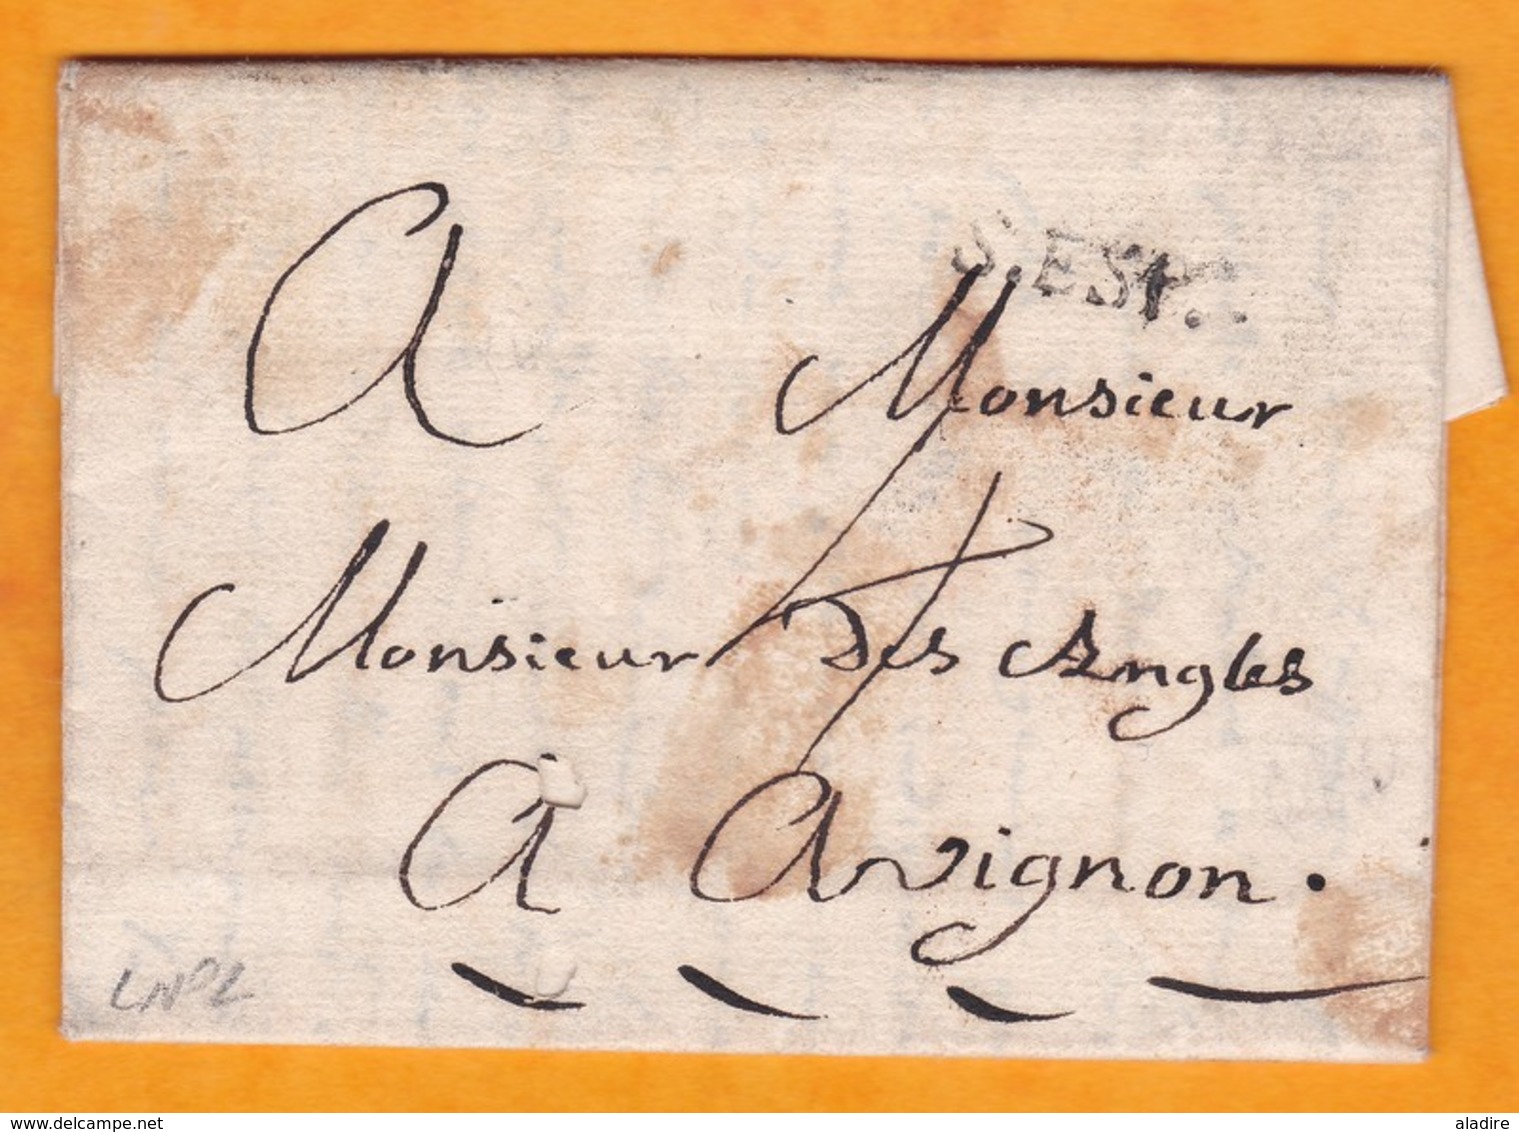 1774 - Marque Postale De Pont Saint Esprit, Gard Sur LAC Familiale De 2 Pages Vers Avignon, Vaucluse - 1701-1800: Precursors XVIII